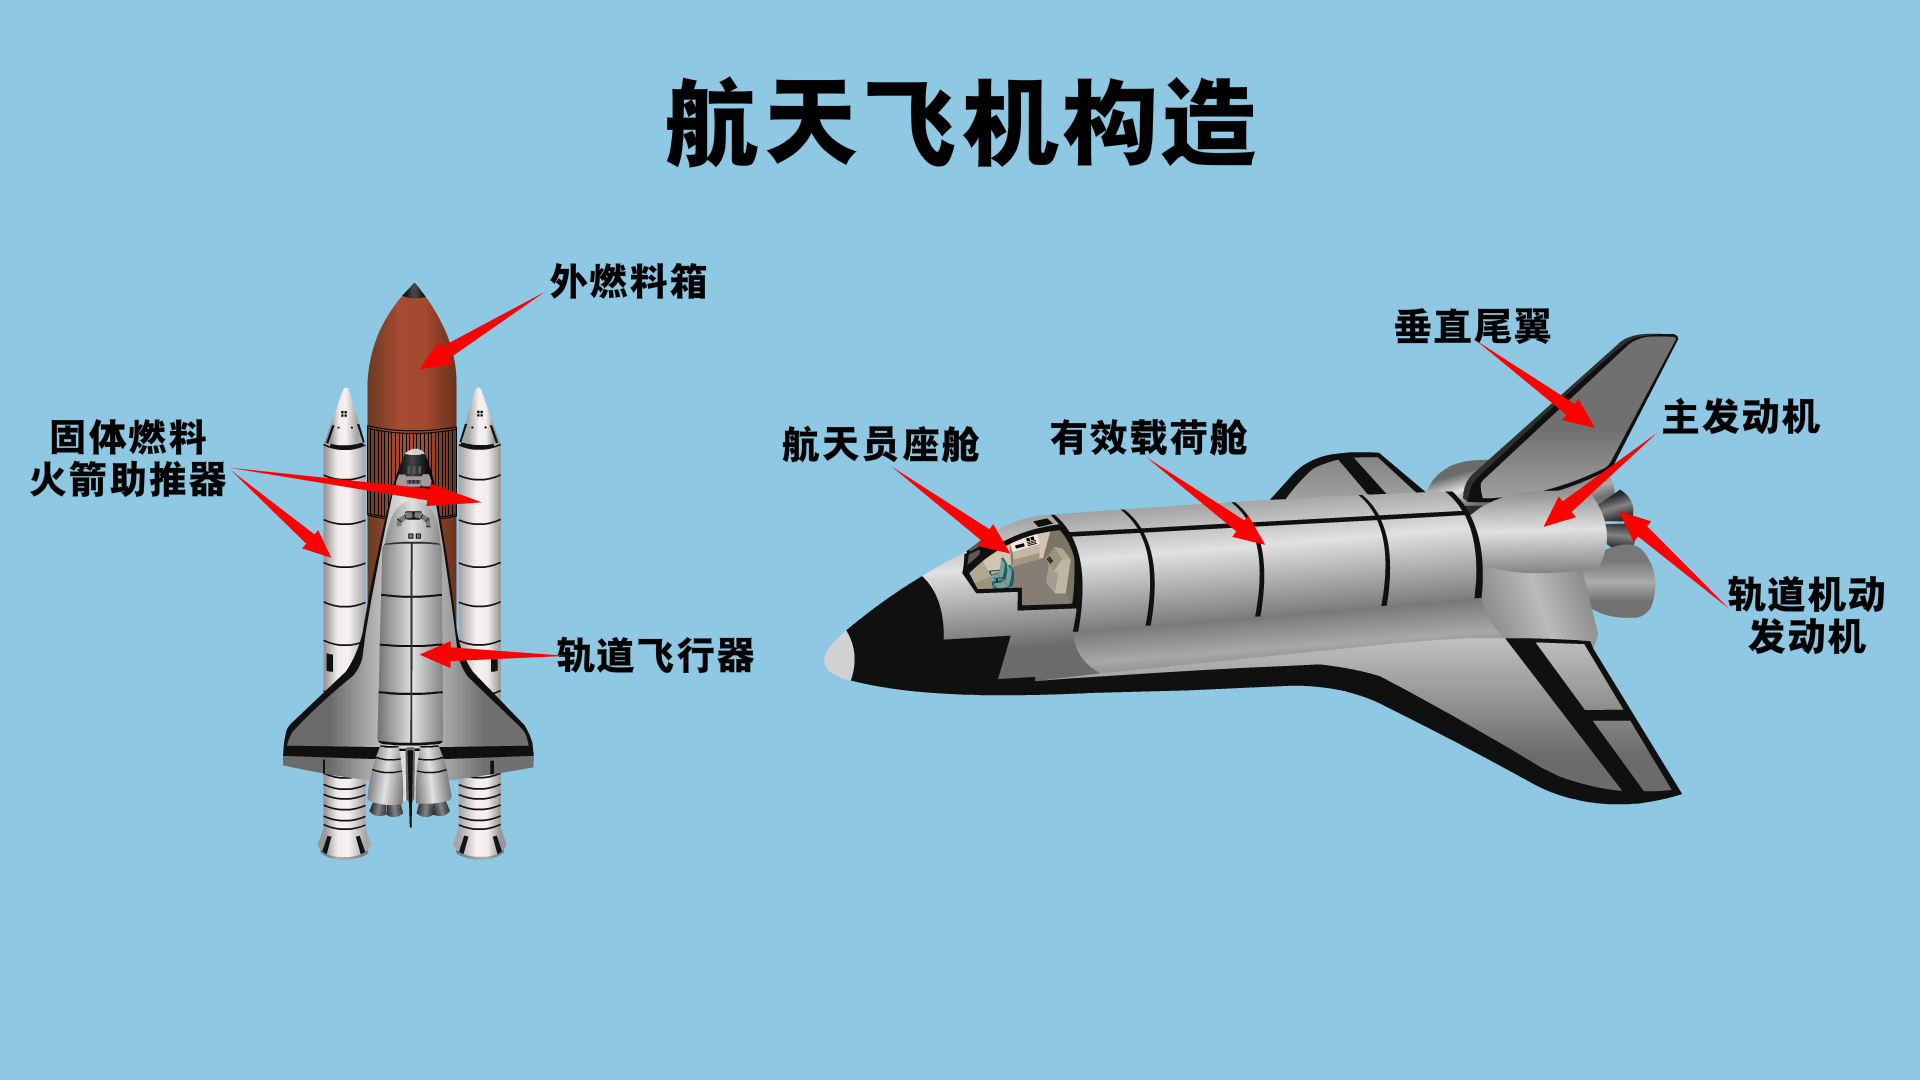 轨道飞行器,外燃料箱,固体燃料火箭助推器